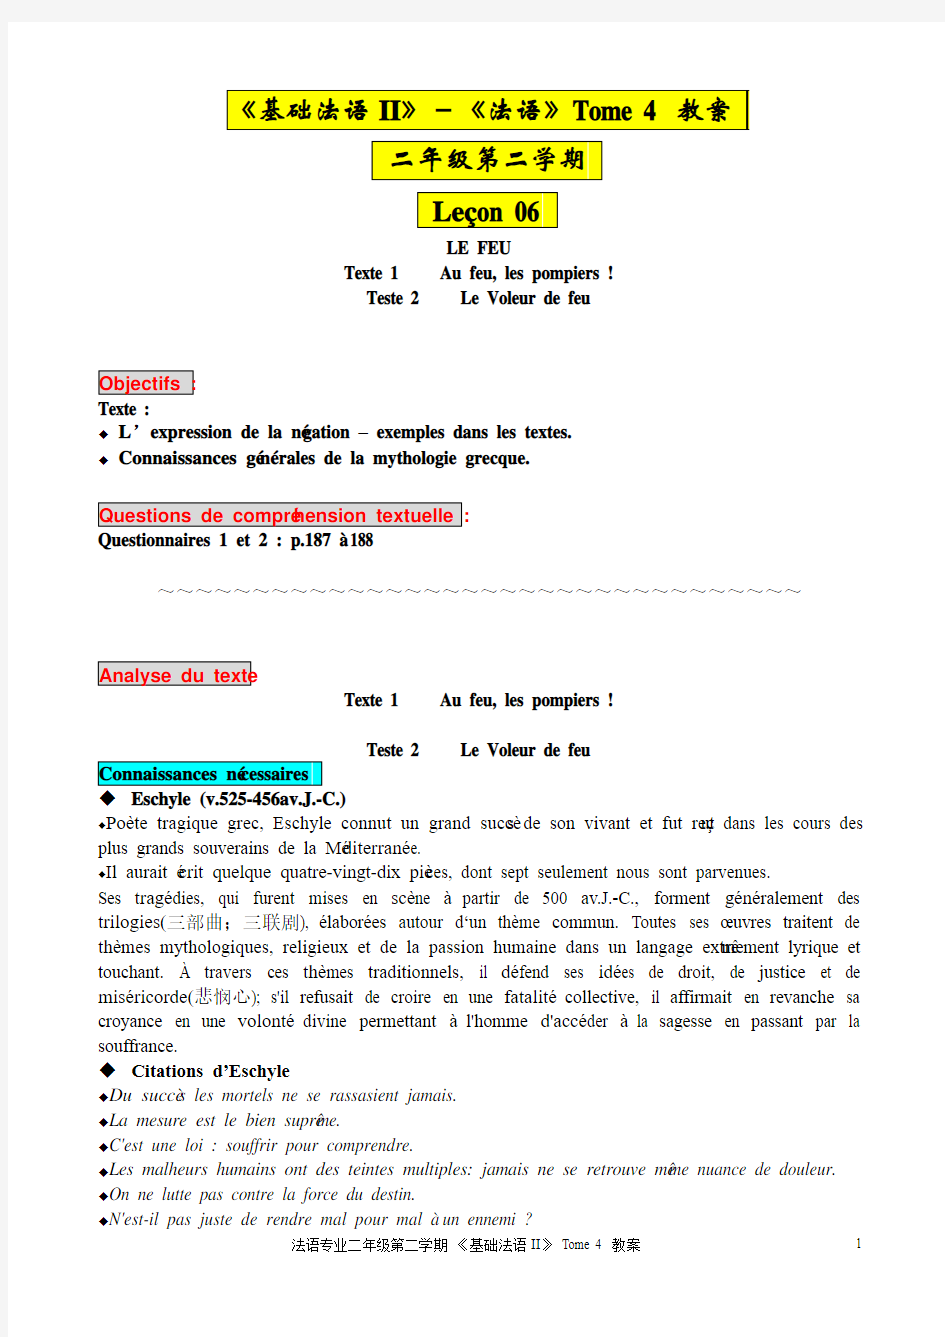 二年级第二学期 基础法语II 《法语》Tome 4-Lecon 6